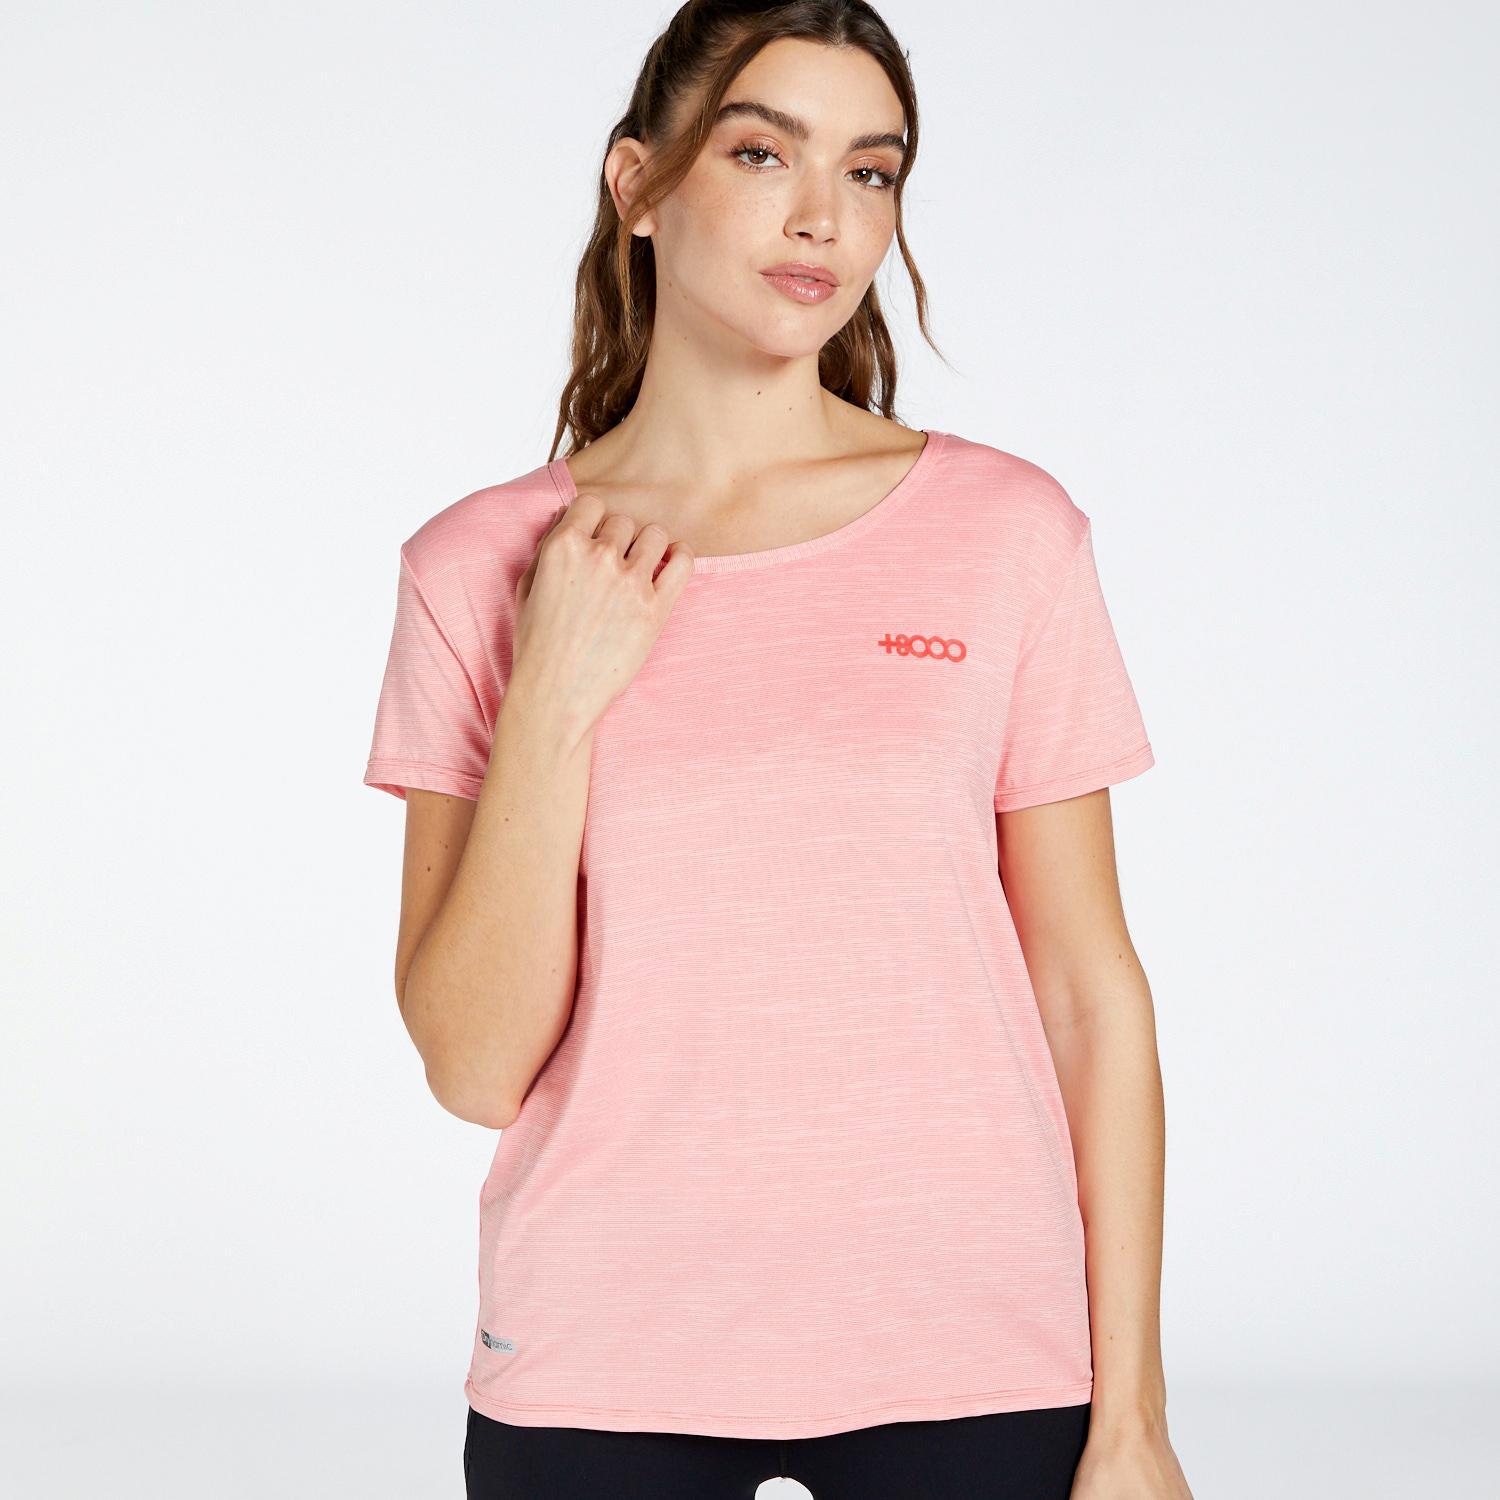 +8000 nabla - rosa - t-shirt trekking donna mkp taglia l uomo